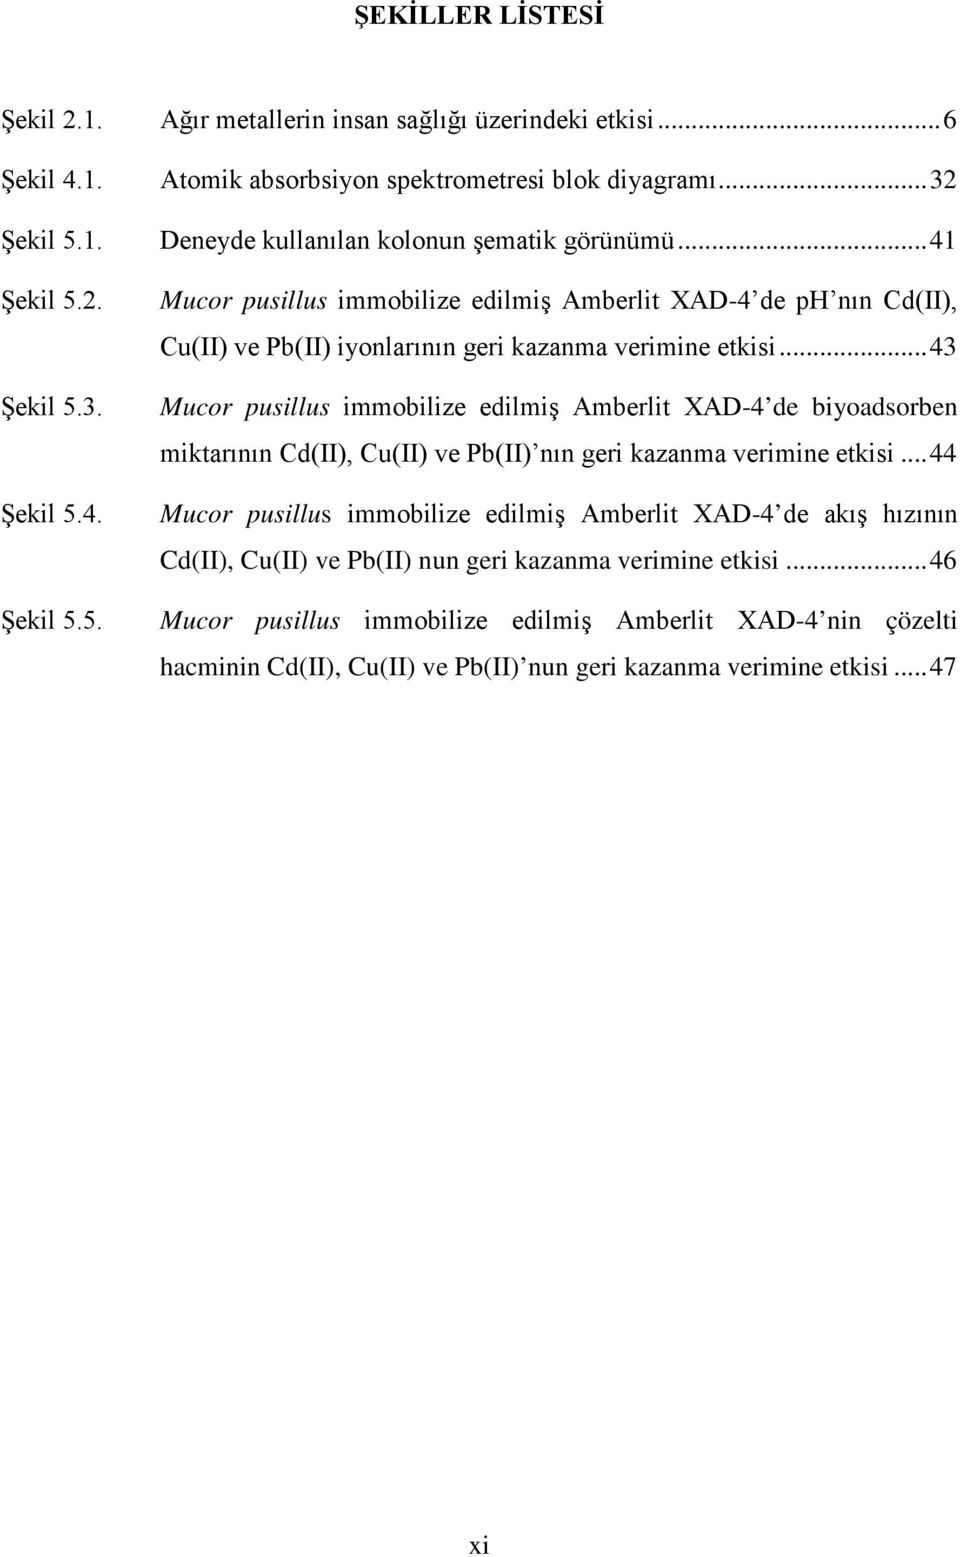 .. 43 Mucor pusillus immobilize edilmiş Amberlit XAD-4 de biyoadsorben miktarının Cd(II), Cu(II) ve Pb(II) nın geri kazanma verimine etkisi.